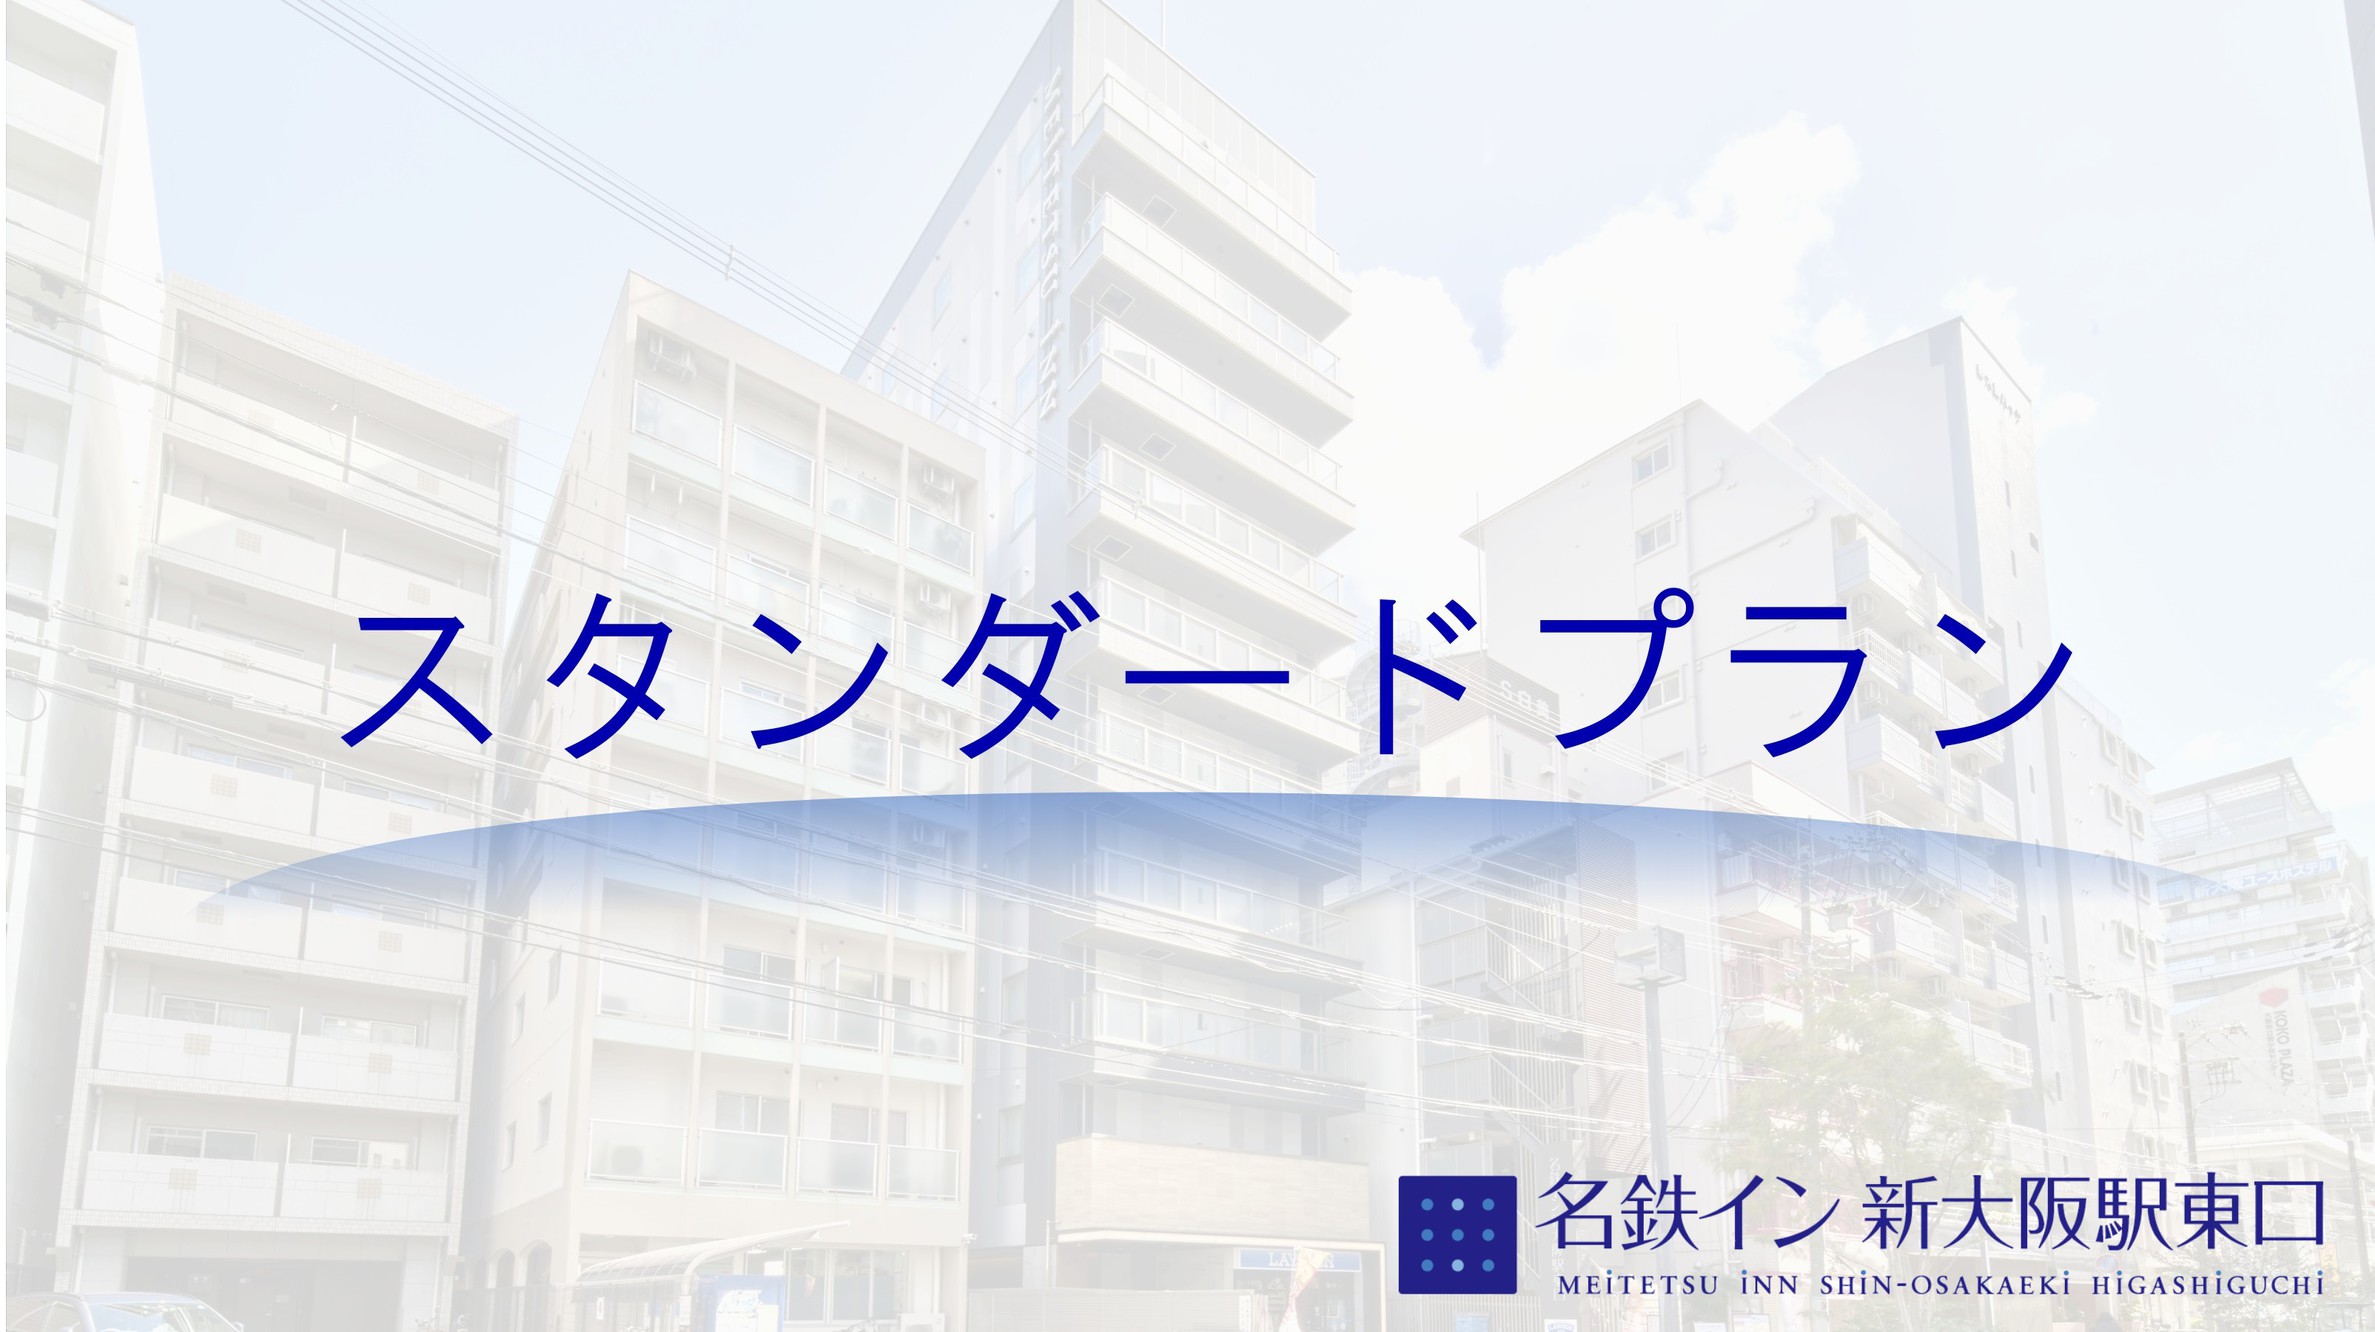 【スタンダードプラン】大阪旅行を素敵な旅へ♪2020年6月21日オープンのデザイナーズホテル